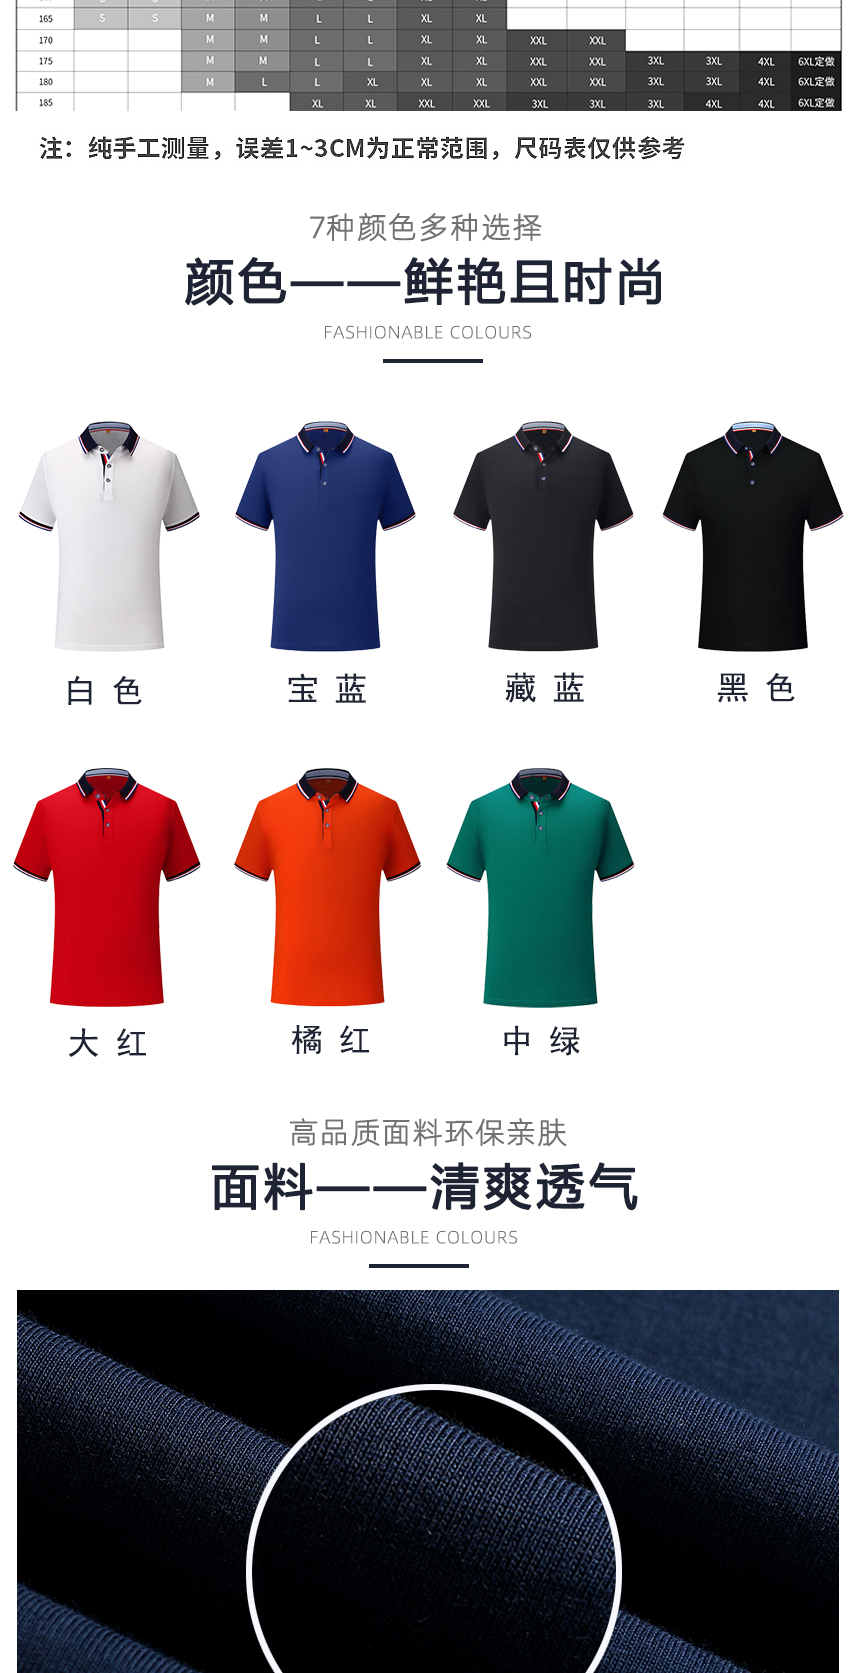 纯棉t恤衫同款不同颜色款式展示，纯棉t恤衫精选优质面料